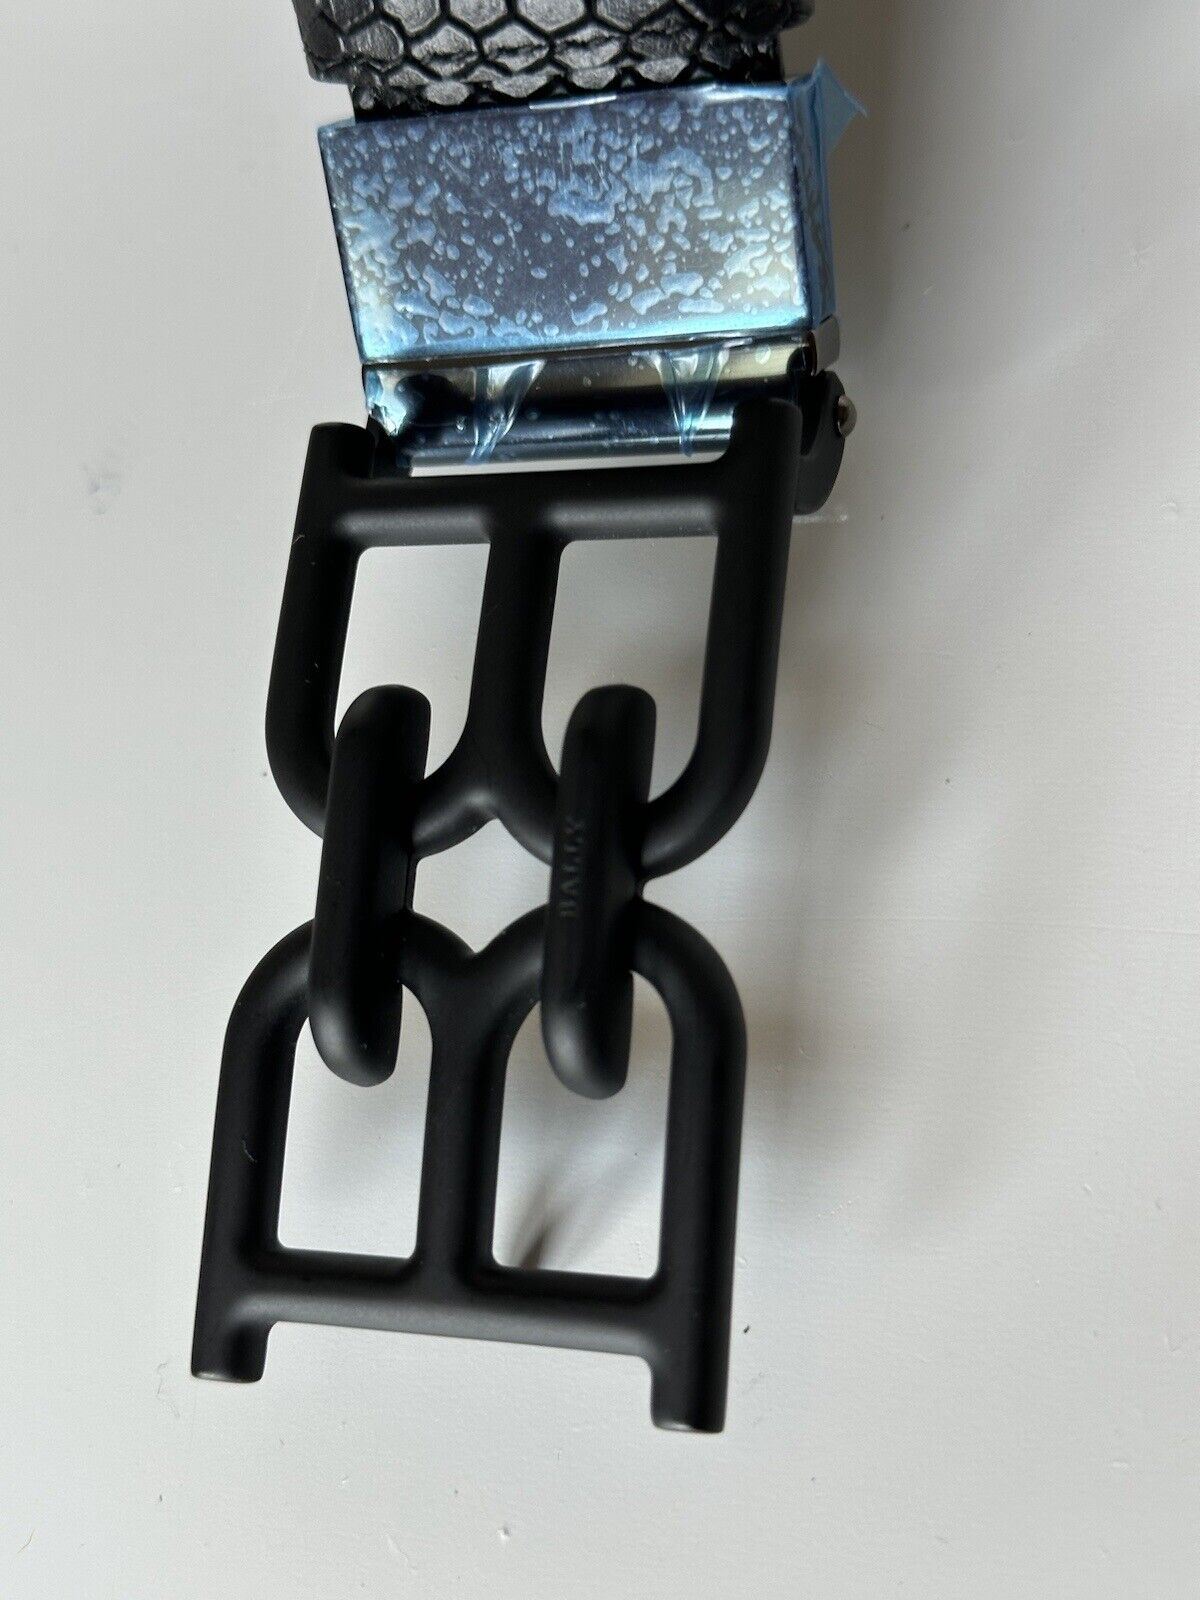 Neu mit Etikett: 450 $ Bally Herren-Gürtel mit doppelseitiger B-Kette in Schwarz, 44/110, hergestellt in Italien 